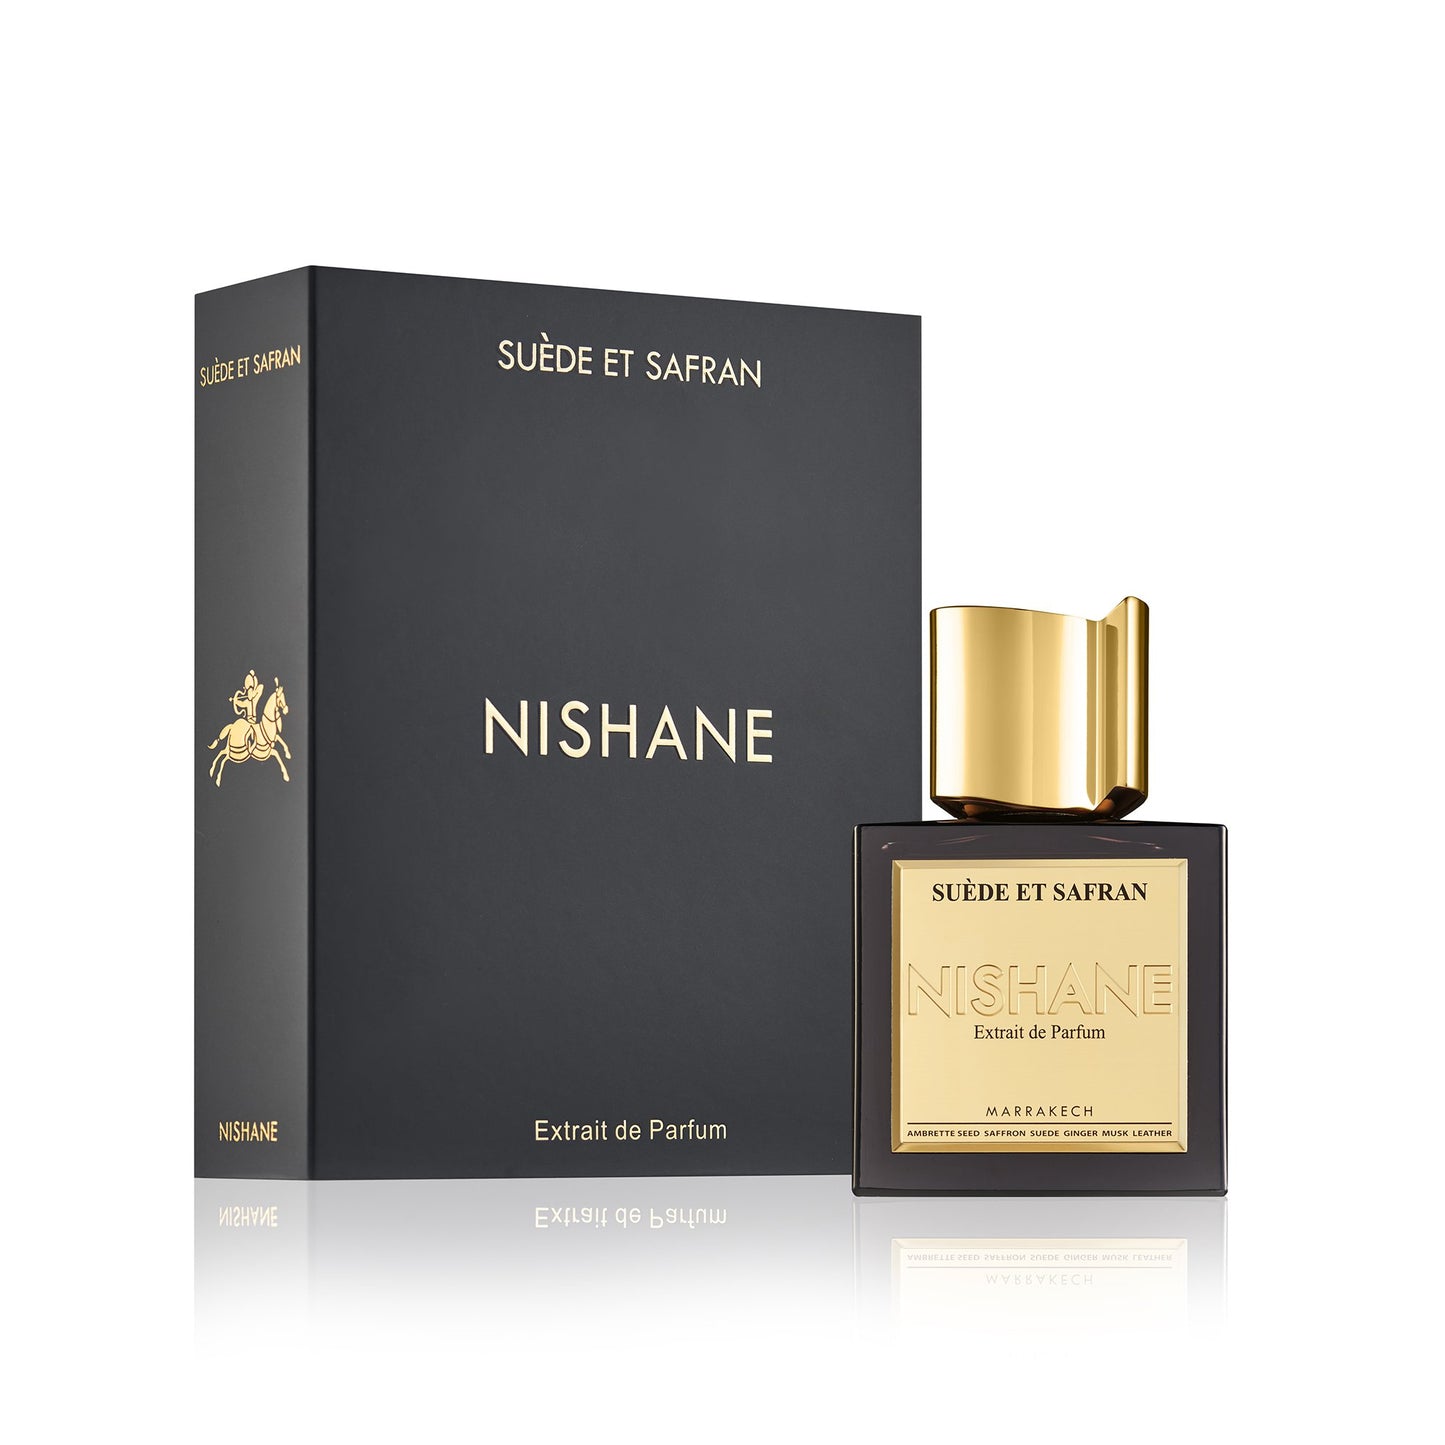 Suede Et Safran 1.5ml Sample Vial - Extrait de Parfum